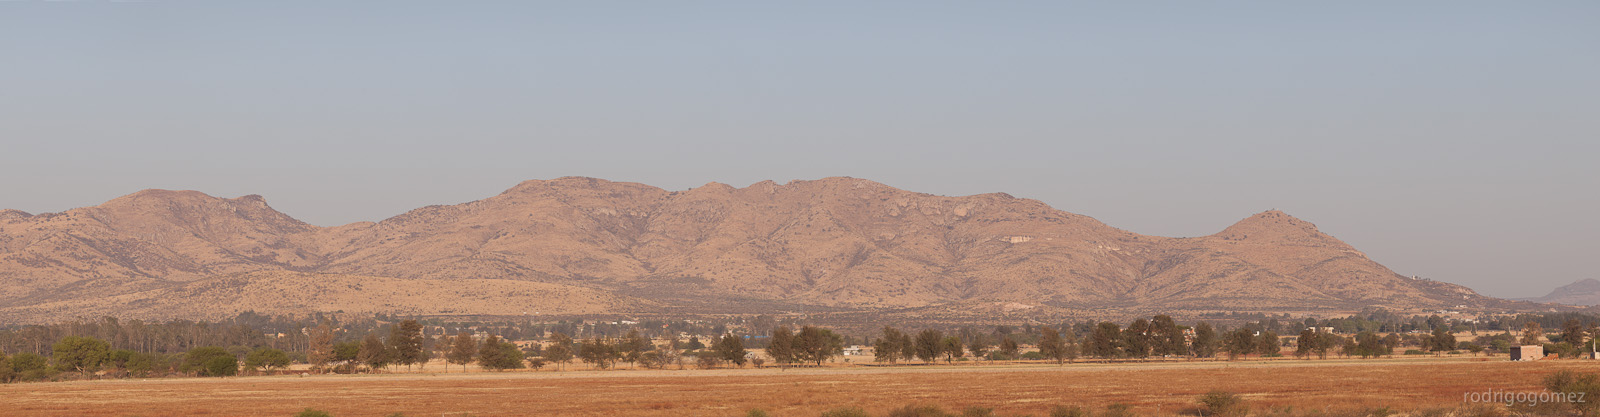 Cerro del Muerto II - Aguascalientes